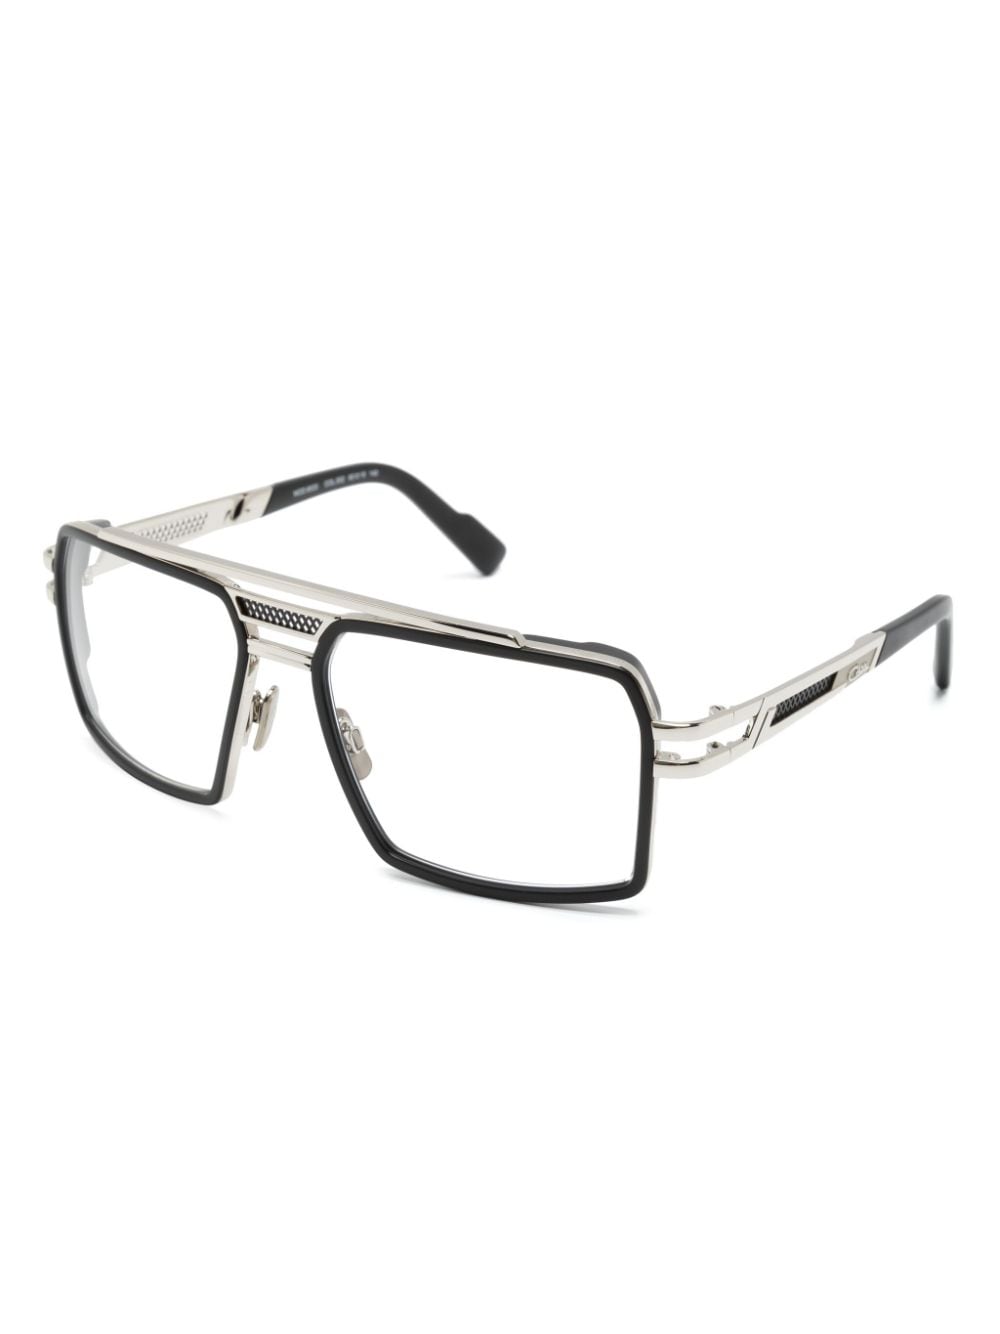 Cazal 6033 bril met vierkant montuur - Zilver